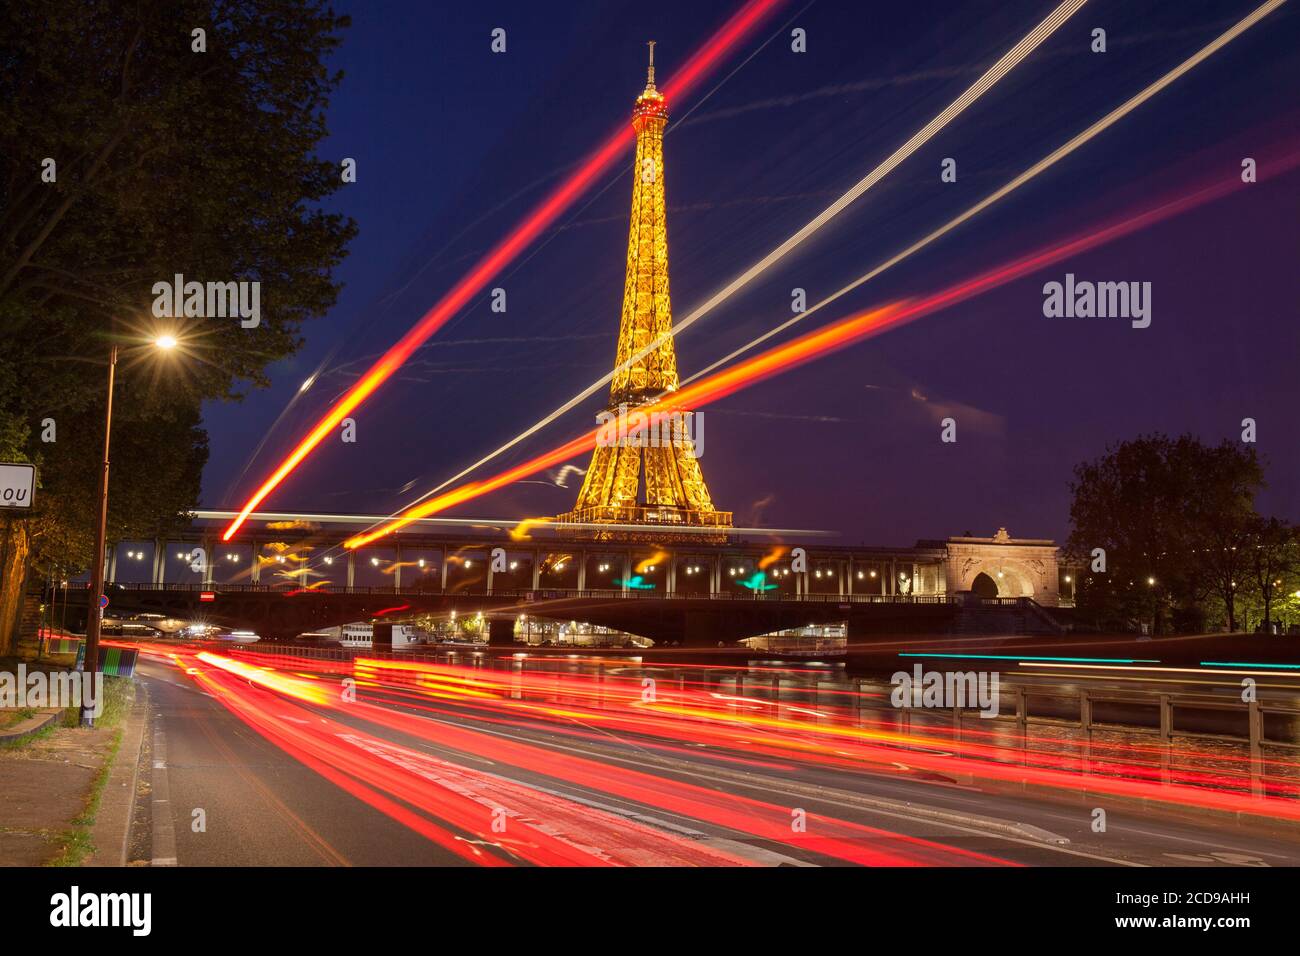 Francia, Parigi, zona dichiarata Patrimonio Mondiale dall'UNESCO, la Torre Eiffel (? SETE-illuminazioni Pierre Bideau) e il ponte Bir-Hakeim di notte Foto Stock